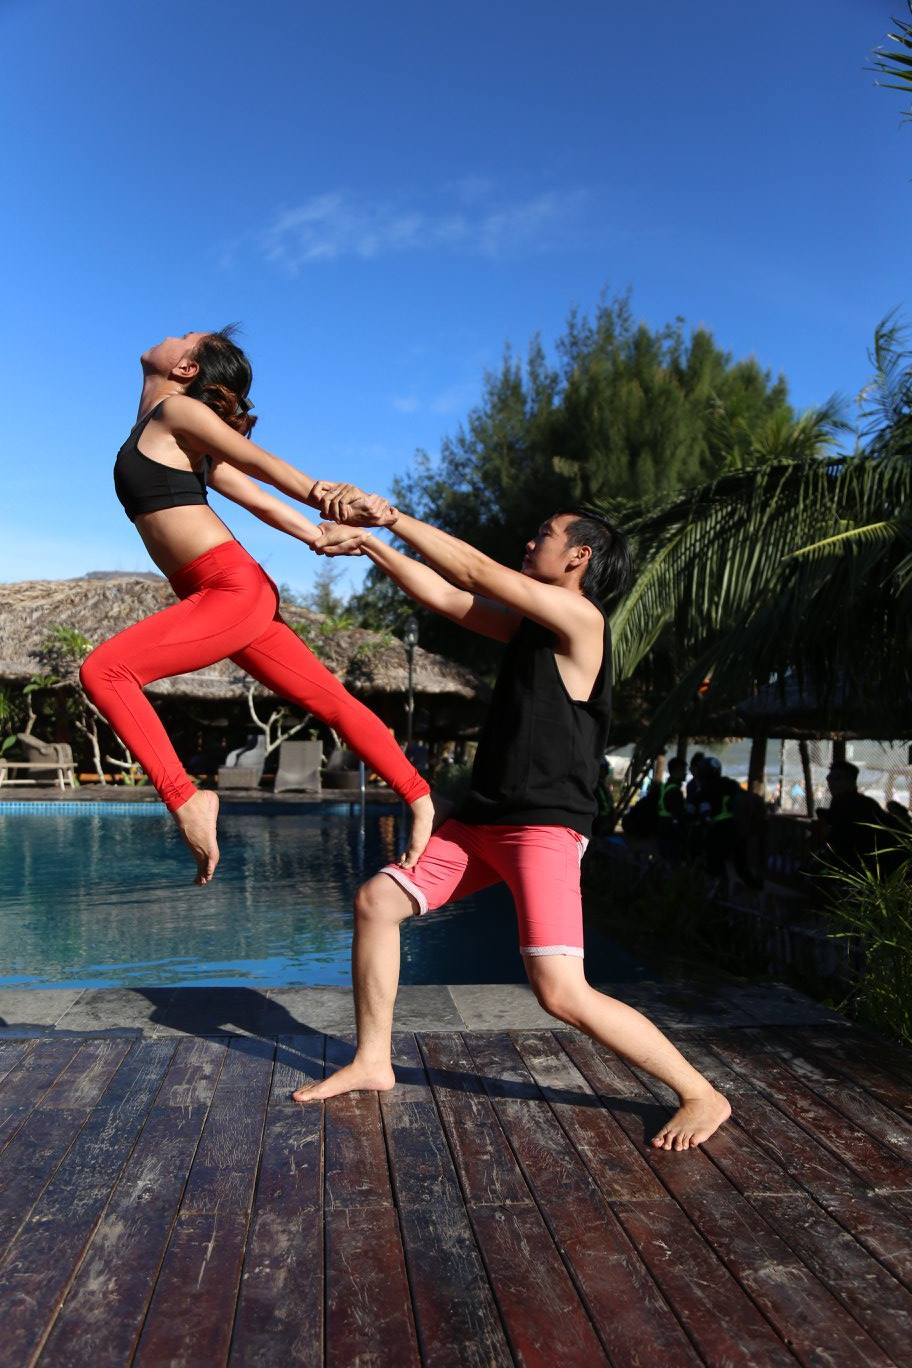 Chào mừng đến với thế giới đầy tình yêu của yoga đôi! Ảnh của chúng tôi sẽ cho bạn thấy sự kết nối đặc biệt giữa hai người yêu nhau thông qua đôi yoga. Xem ảnh để cảm nhận được tình yêu và sự hài lòng của họ trong suốt quá trình tập luyện yoga đôi.